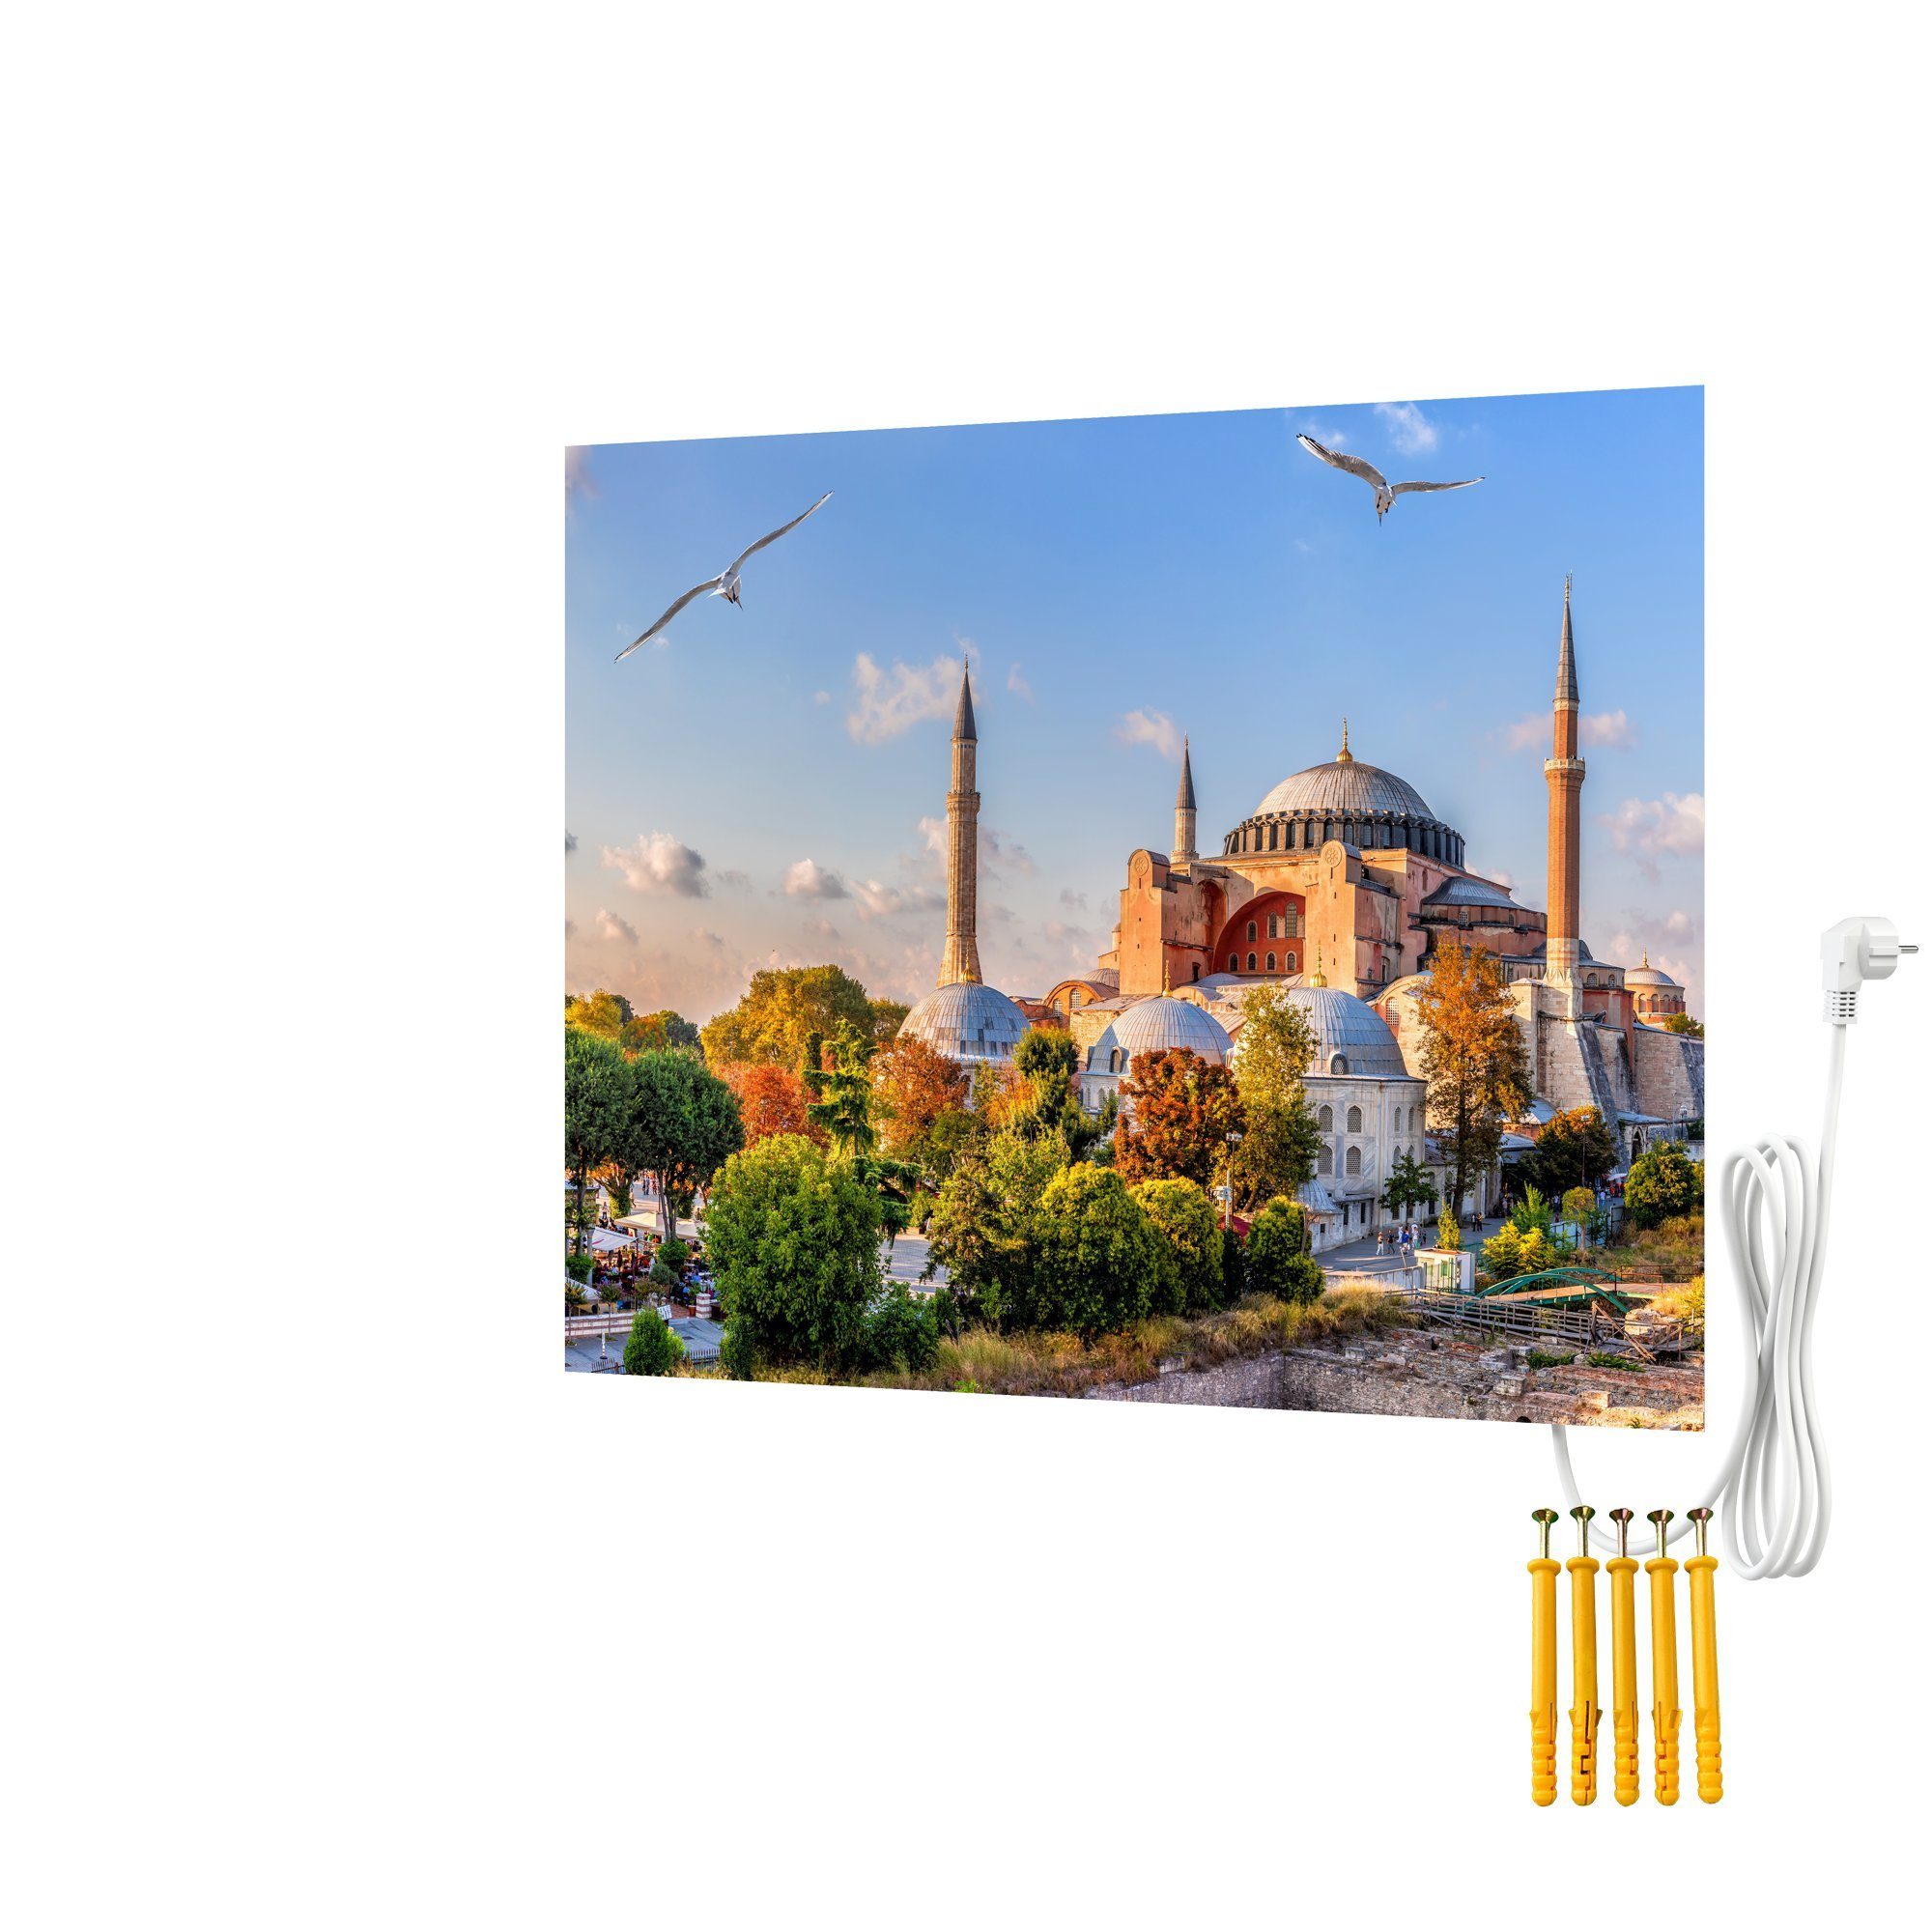 Bringer Infrarotheizung Bildheizung, Rahmenlose Bild Infrarotheizung, Motiv: Istanbul, Türkei | Infrarotheizungen